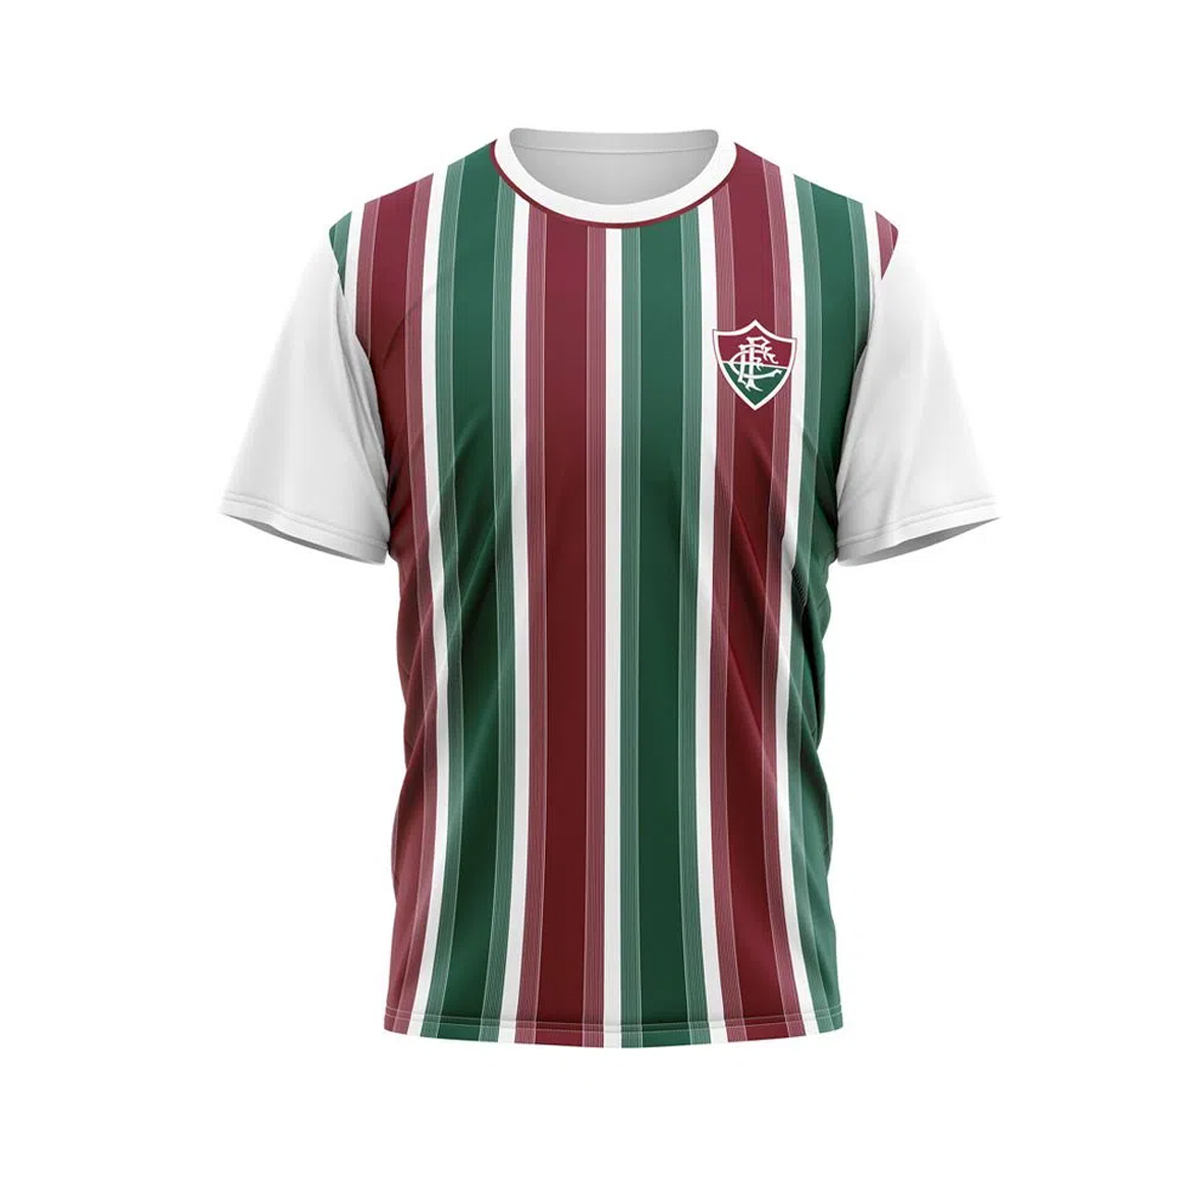 Camisa Fluminense Infantil Oficial Lull Poliester Braziline